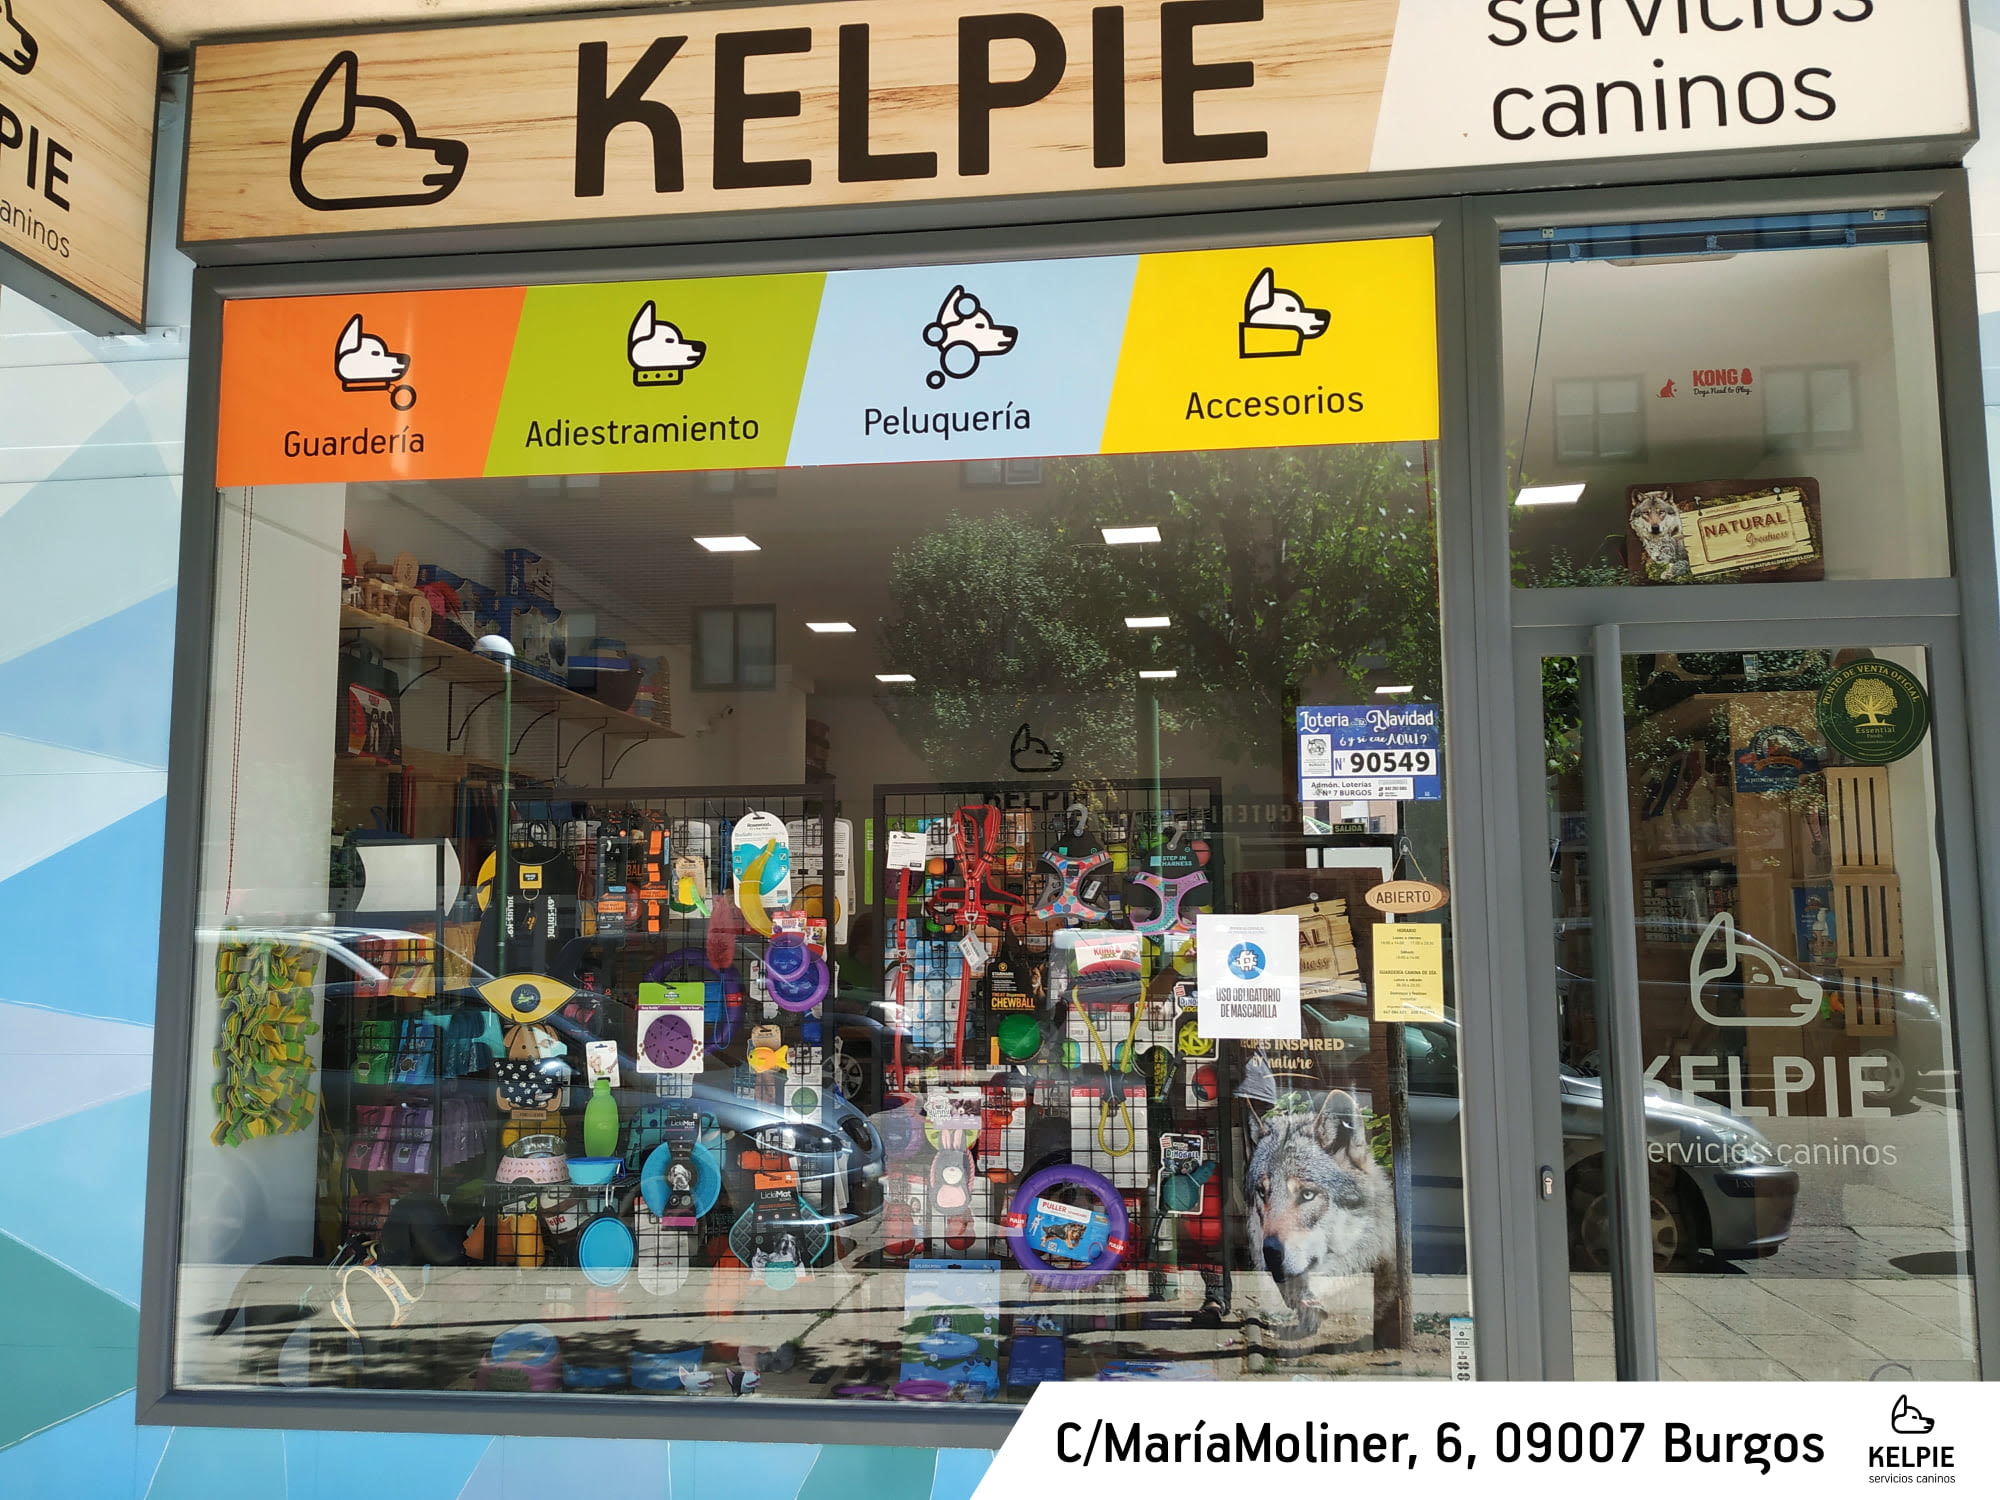 Kelpie Servicios Caninos